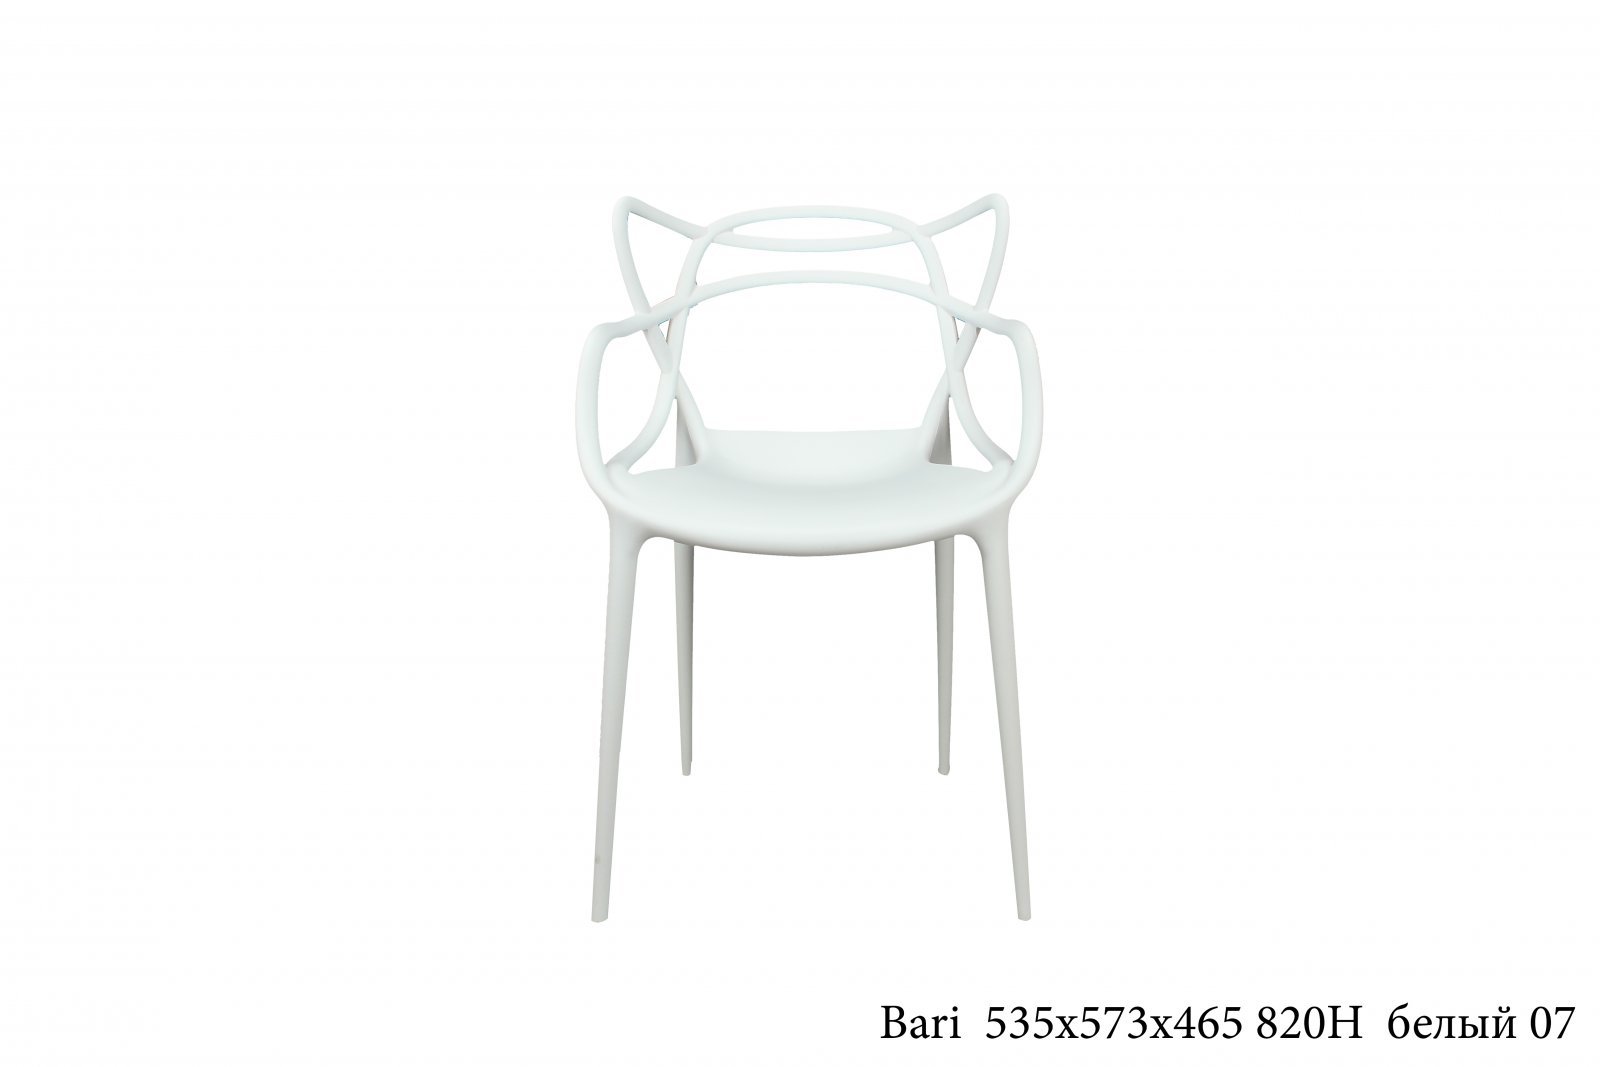 Бари белый. Стул Bari белый. Bari белый. Купить в Белгороде магазин мебель 31 стулья.